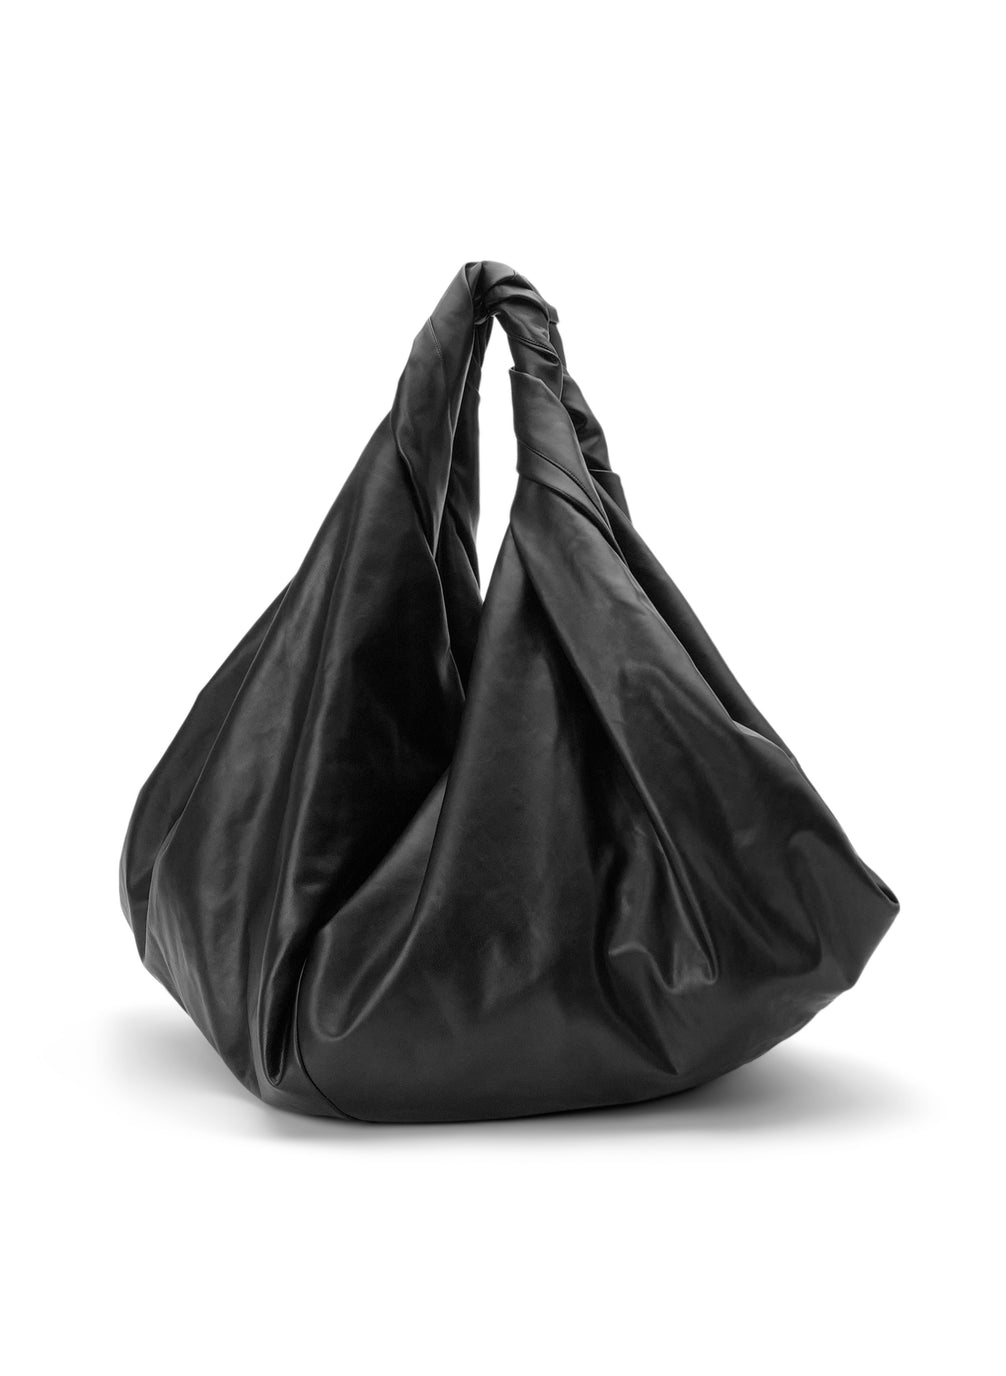 Vegan Leather Bags : vegan leather bags